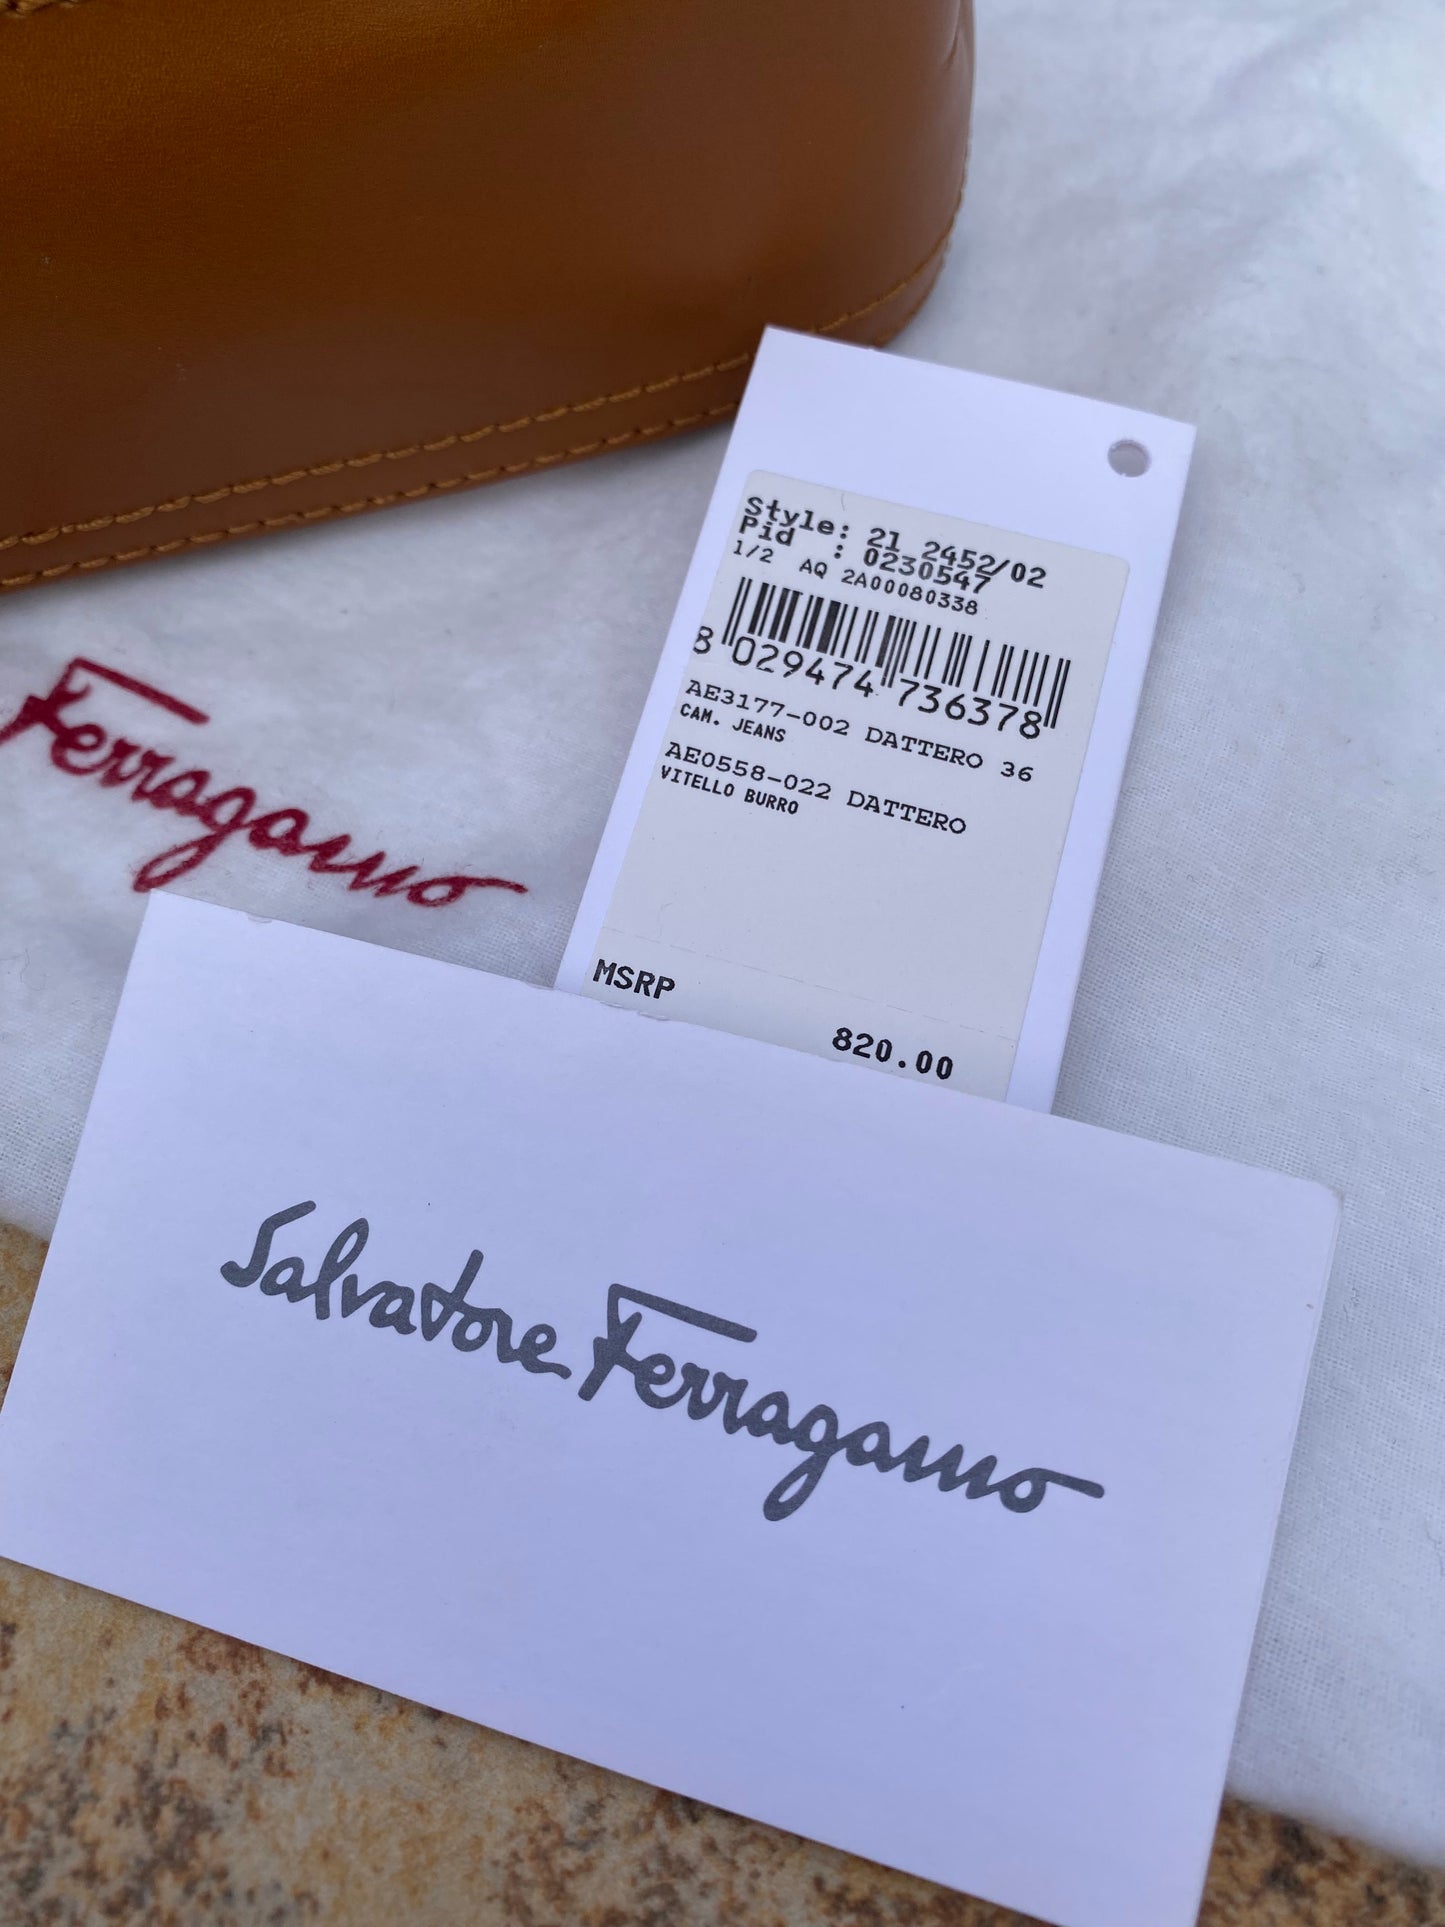 Salvatore Ferragamo Vintage Suede Leather Shoulder Bag